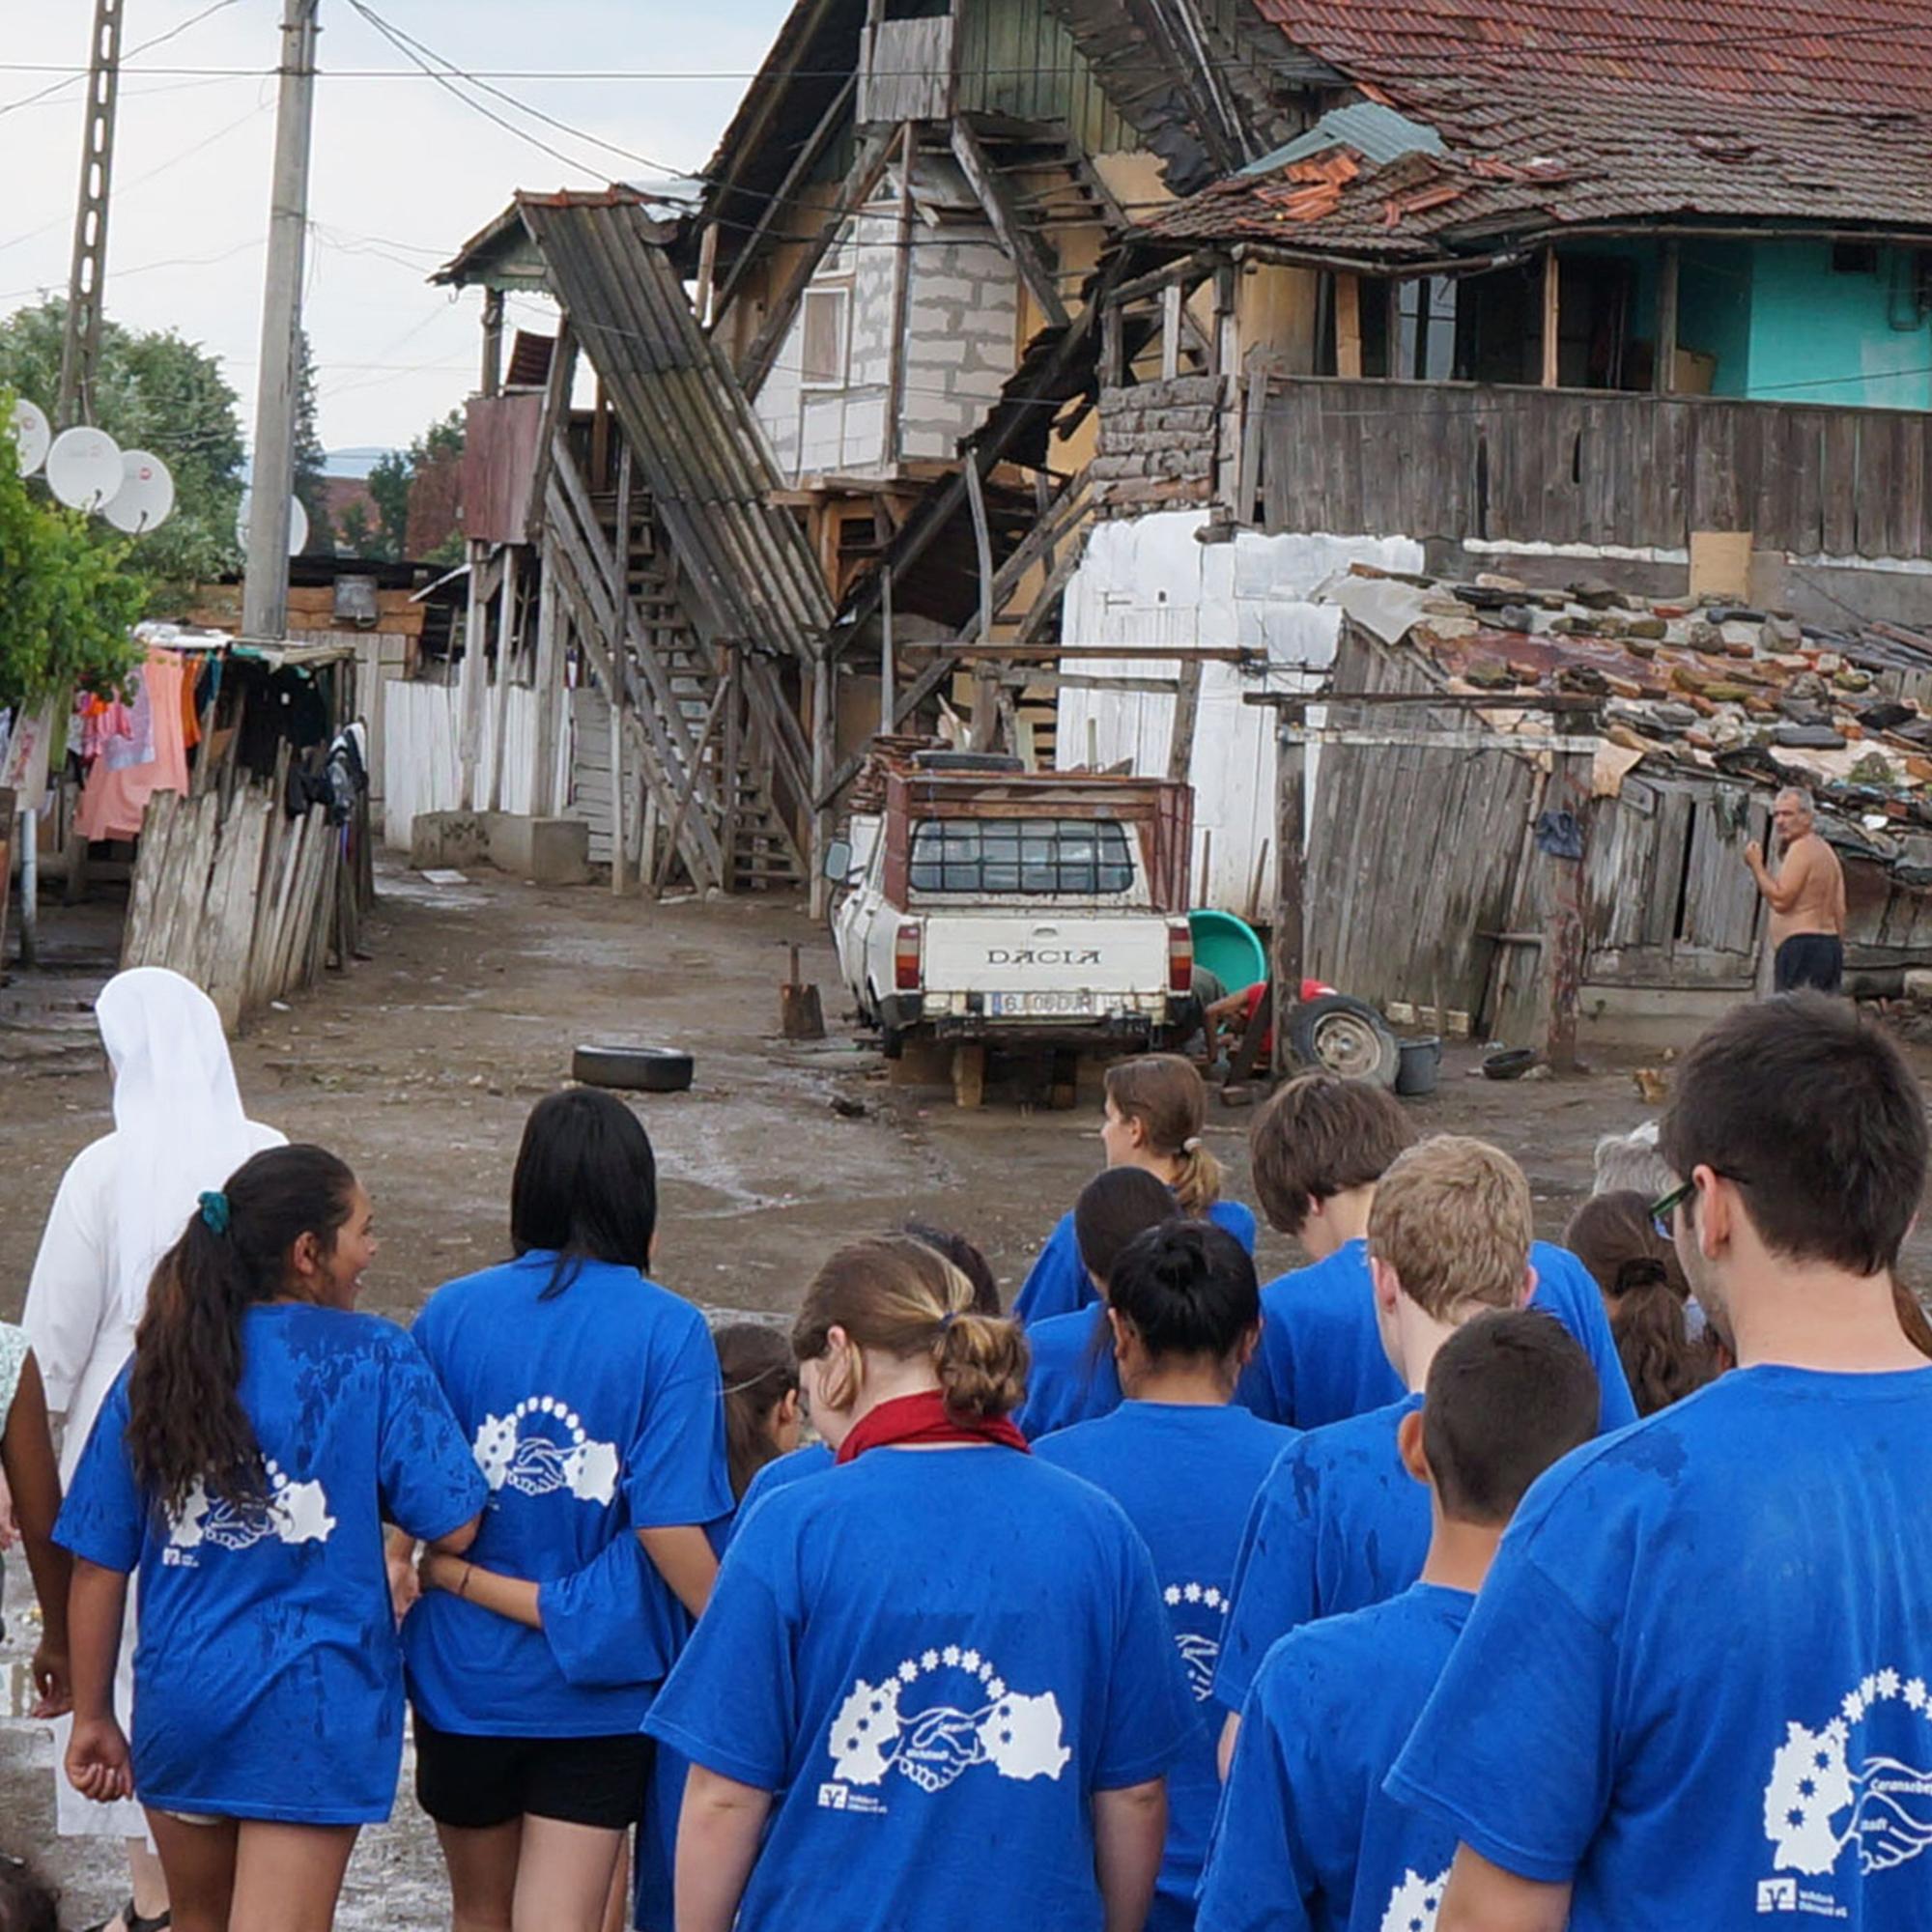 Für kurze Zeit sehen sie alle gleich aus: Beim Besuch eines Slum 2013 in Rumänien trugen Jugendliche aus Deutschland und Rumänien blaue T-Shirts. Foto: Pfarrei St. Sebastian